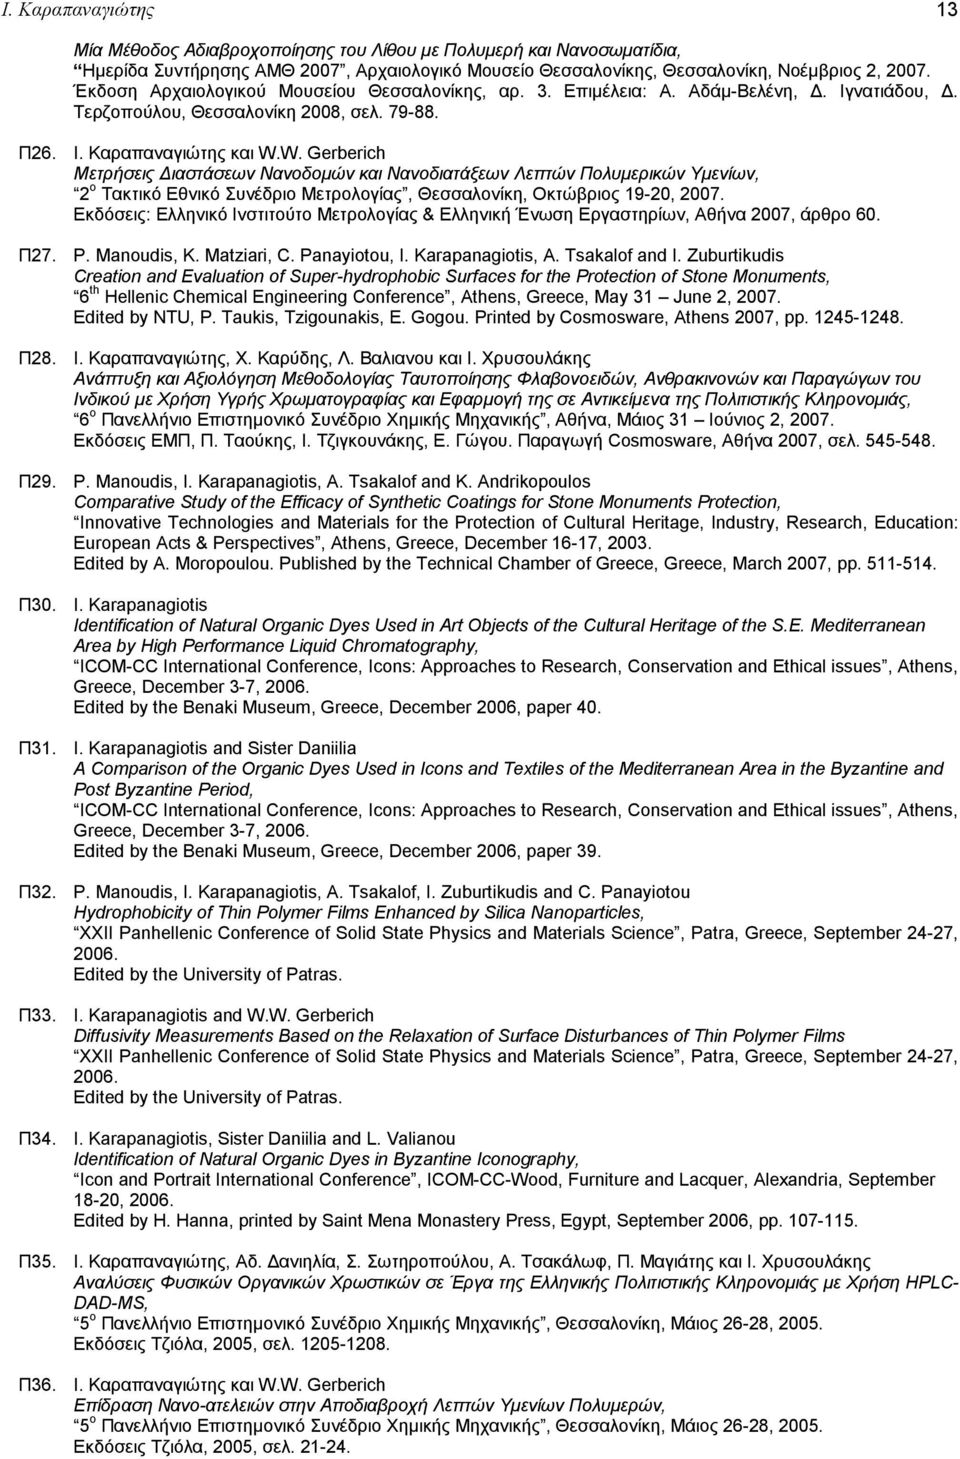 W. Gerberich Μετρήσεις Διαστάσεων Νανοδομών και Νανοδιατάξεων Λεπτών Πολυμερικών Υμενίων, 2 ο Τακτικό Εθνικό Συνέδριο Μετρολογίας, Θεσσαλονίκη, Οκτώβριος 19-20, 2007.